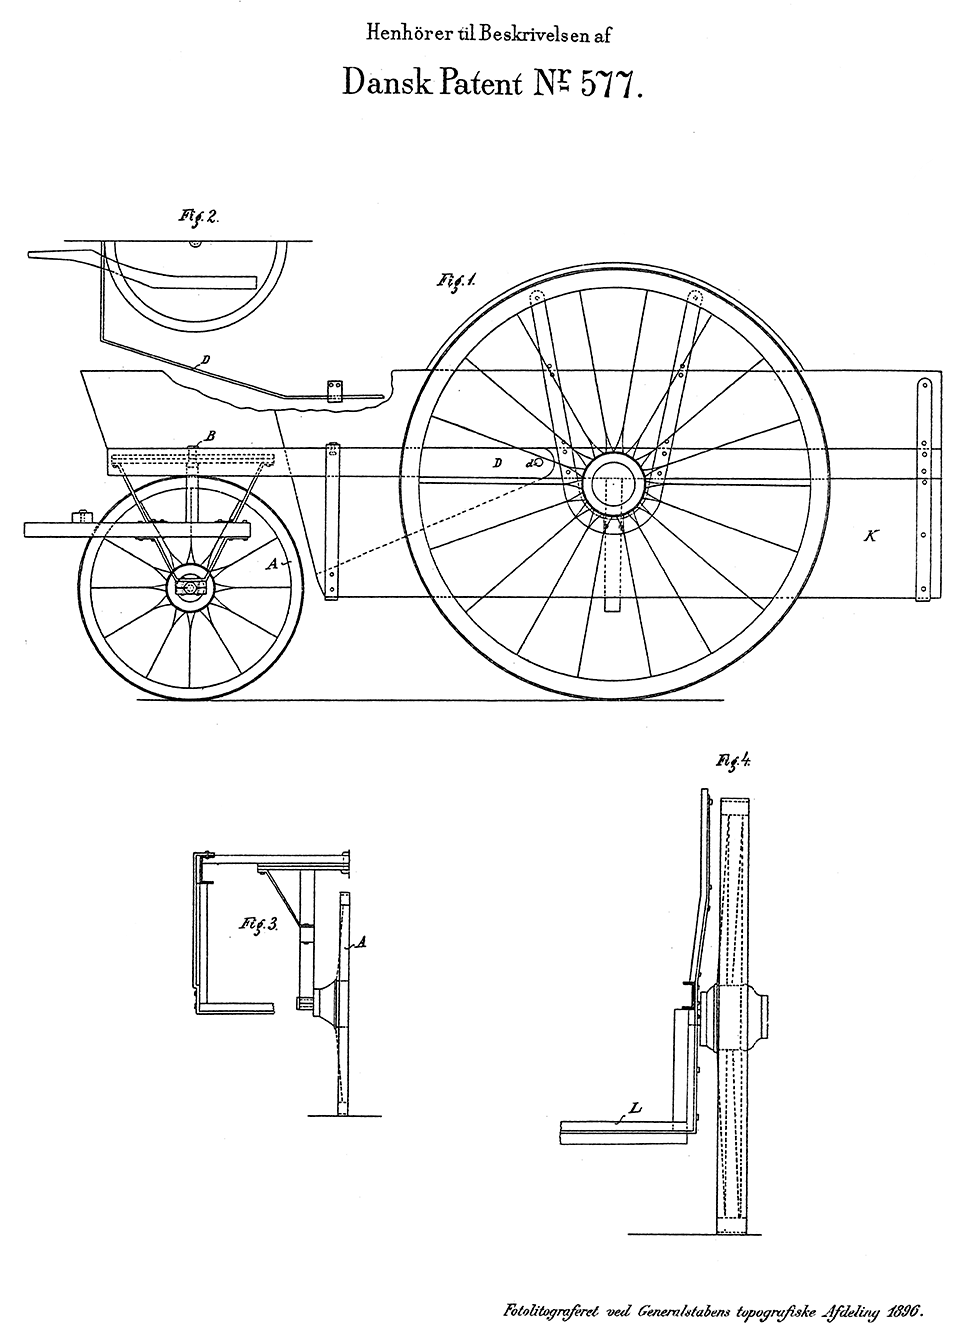 Tegning af trehjulet arbejdsvogn vedrørende patent 577, udstedt den 12. juni 1896.